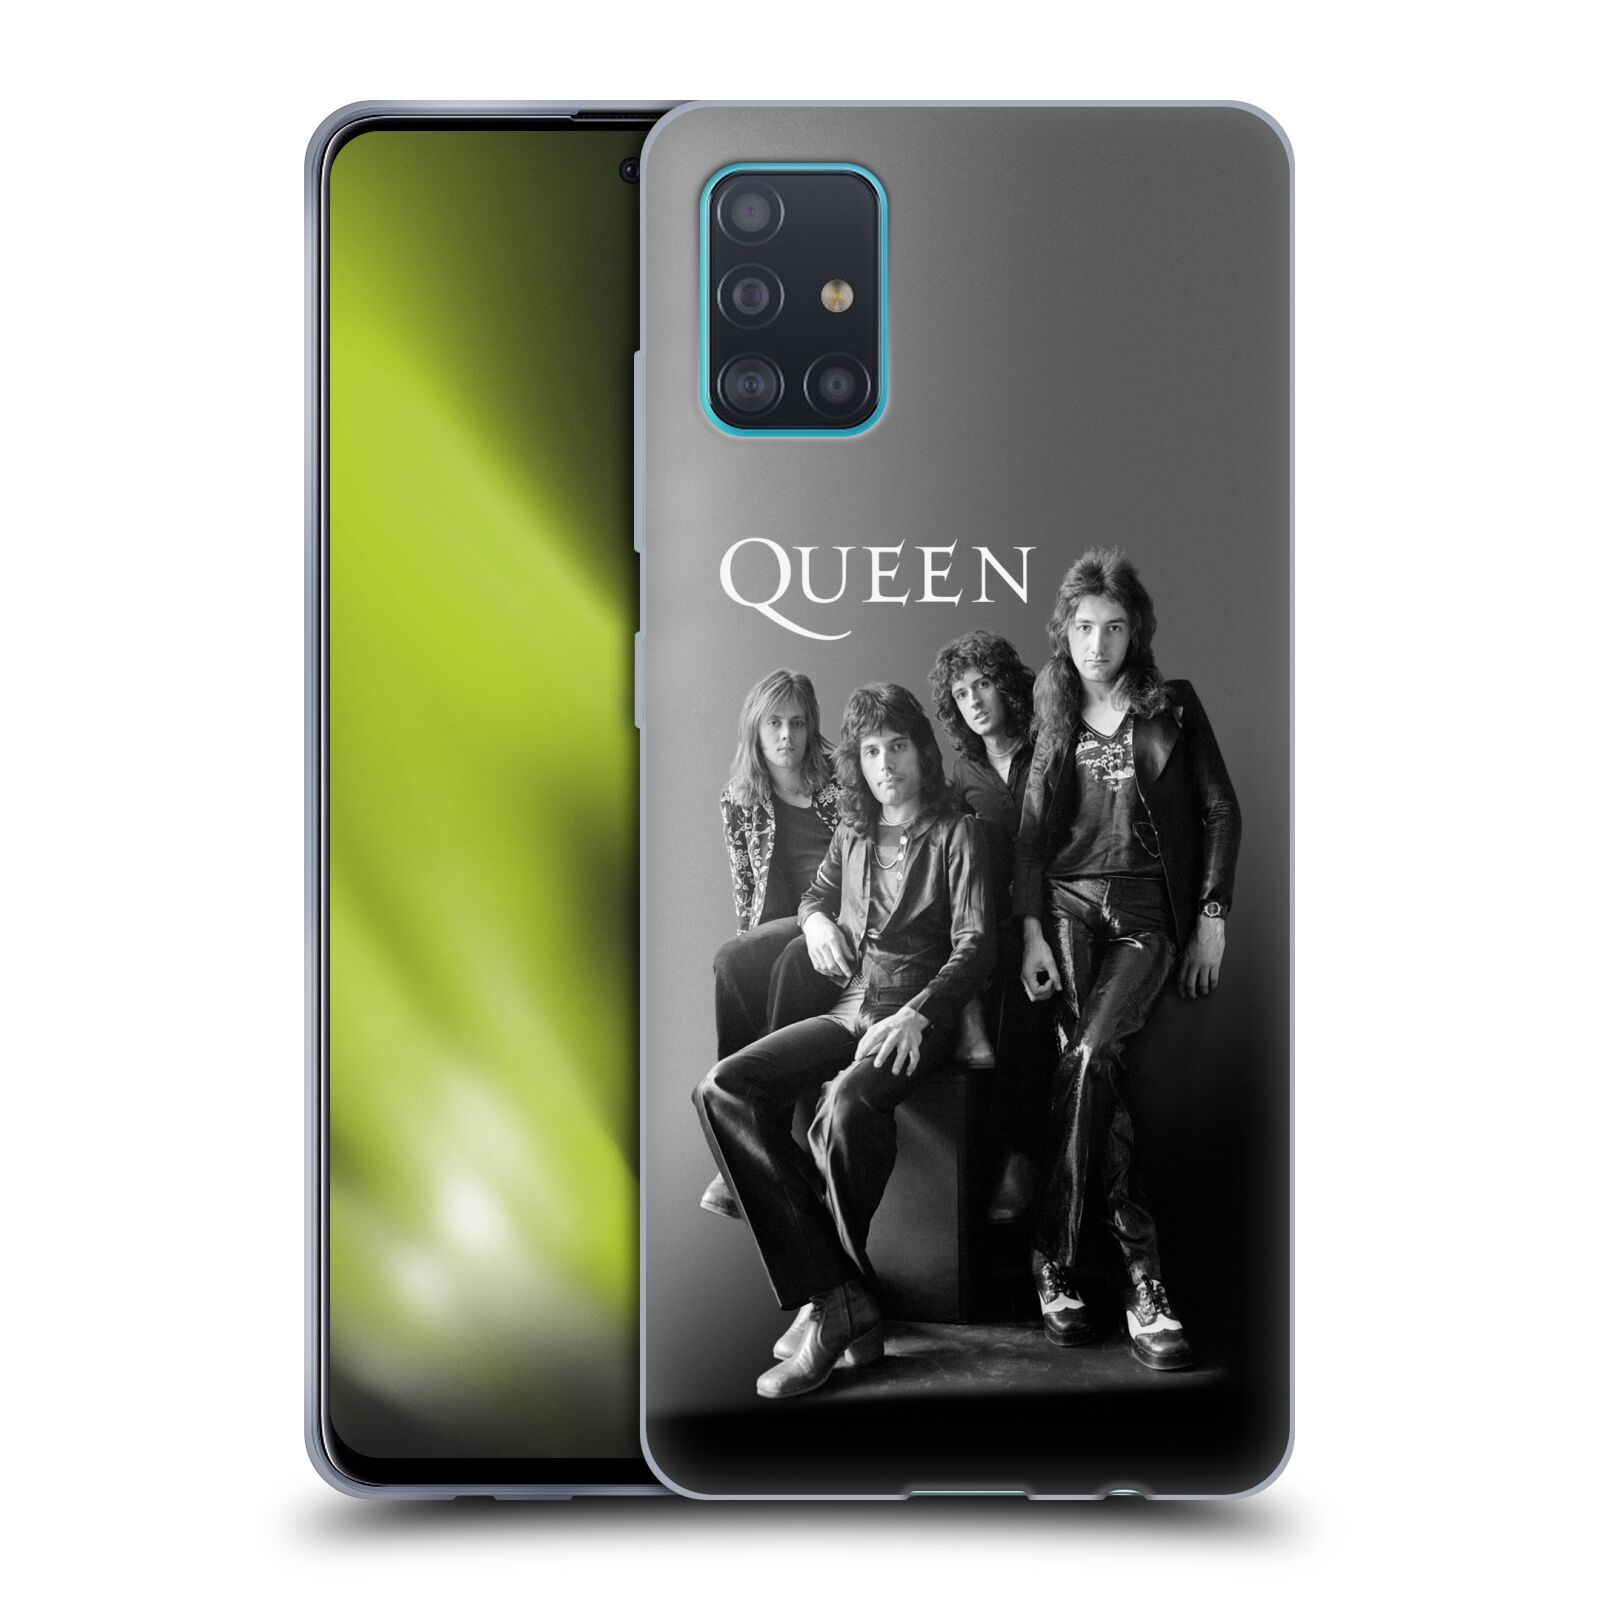 Silikonové pouzdro na mobil Samsung Galaxy A51 - Head Case - Queen - Skupina (Silikonový kryt, obal, pouzdro na mobilní telefon Samsung Galaxy A51 A515F Dual SIM s motivem Queen - Skupina)